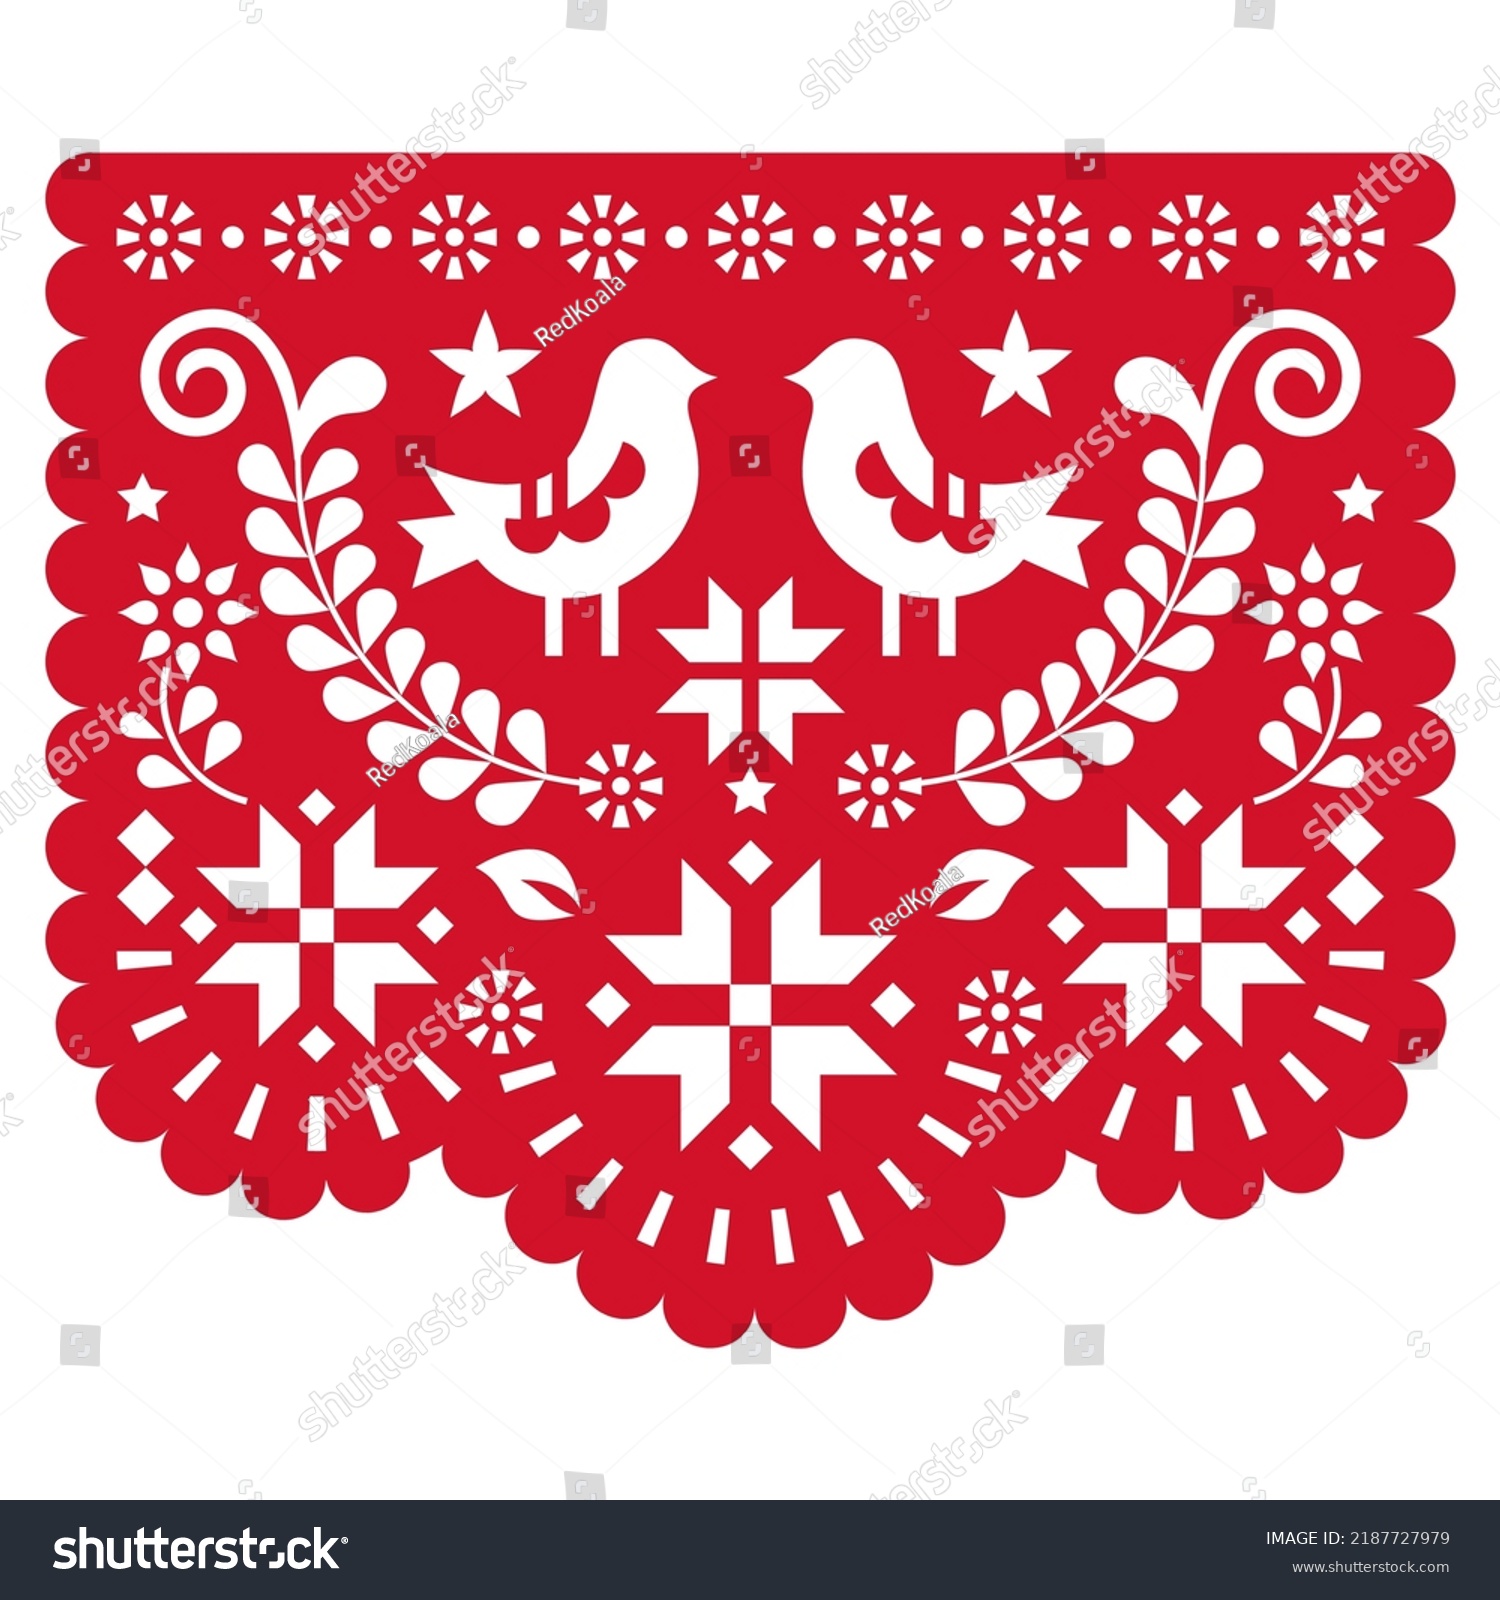 Christmas Papel Picado Vector Design Snowflakes Stock Vector Royalty Free 2187727979 8368